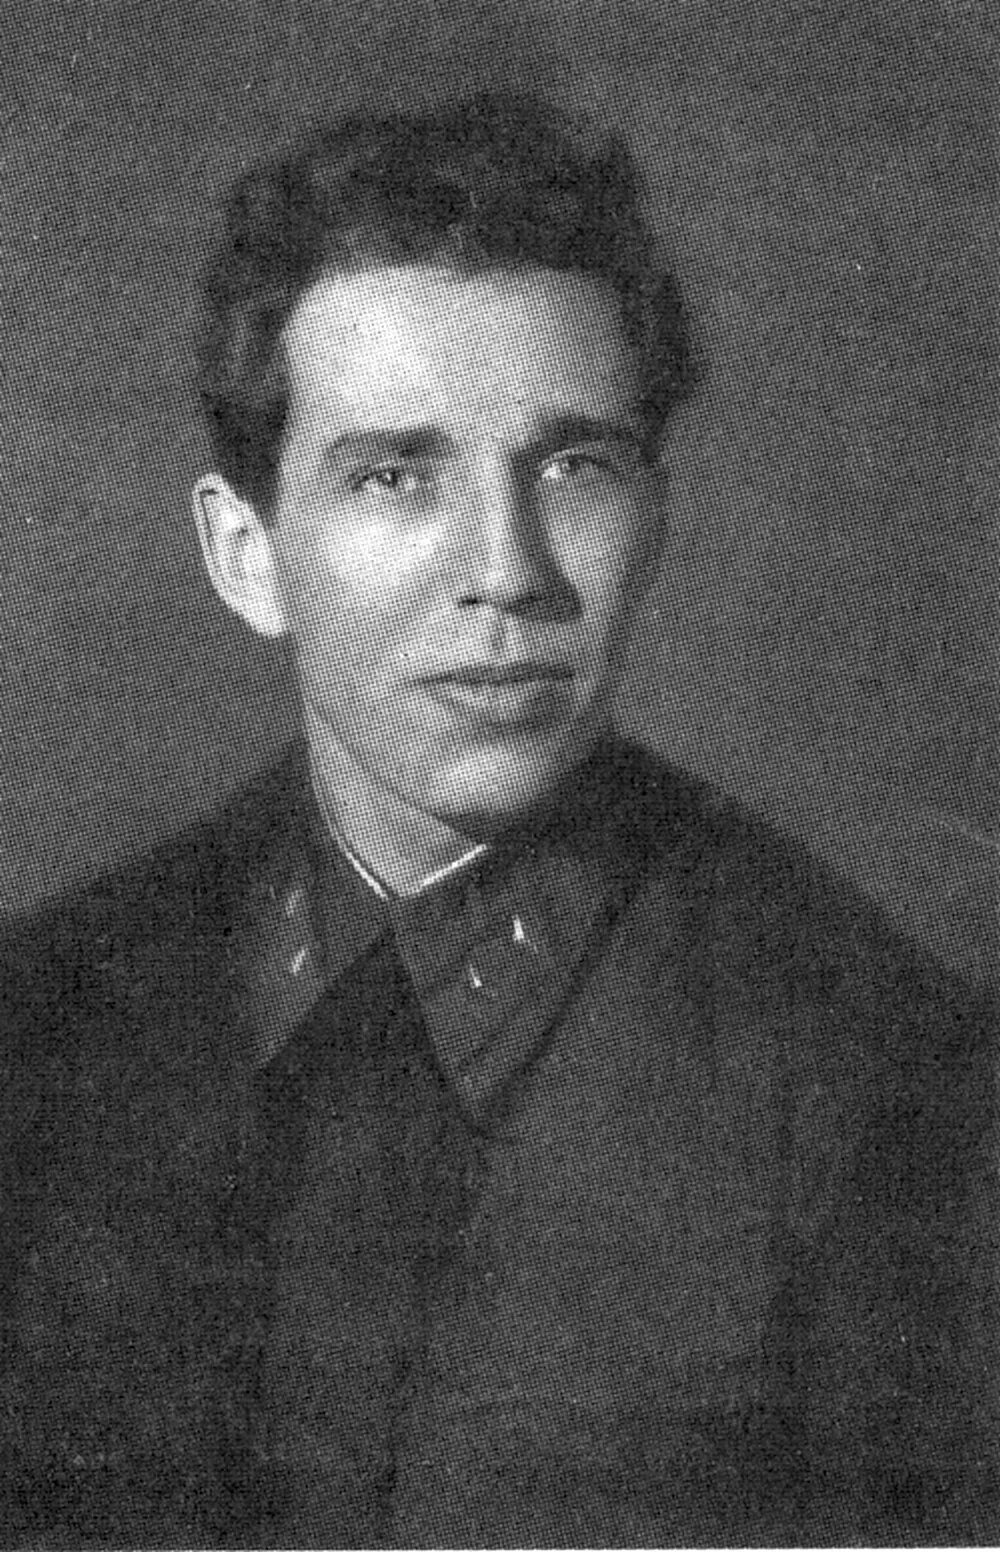 По ленинградскому делу был расстрелян н а. Кузнецов секретарь Ленинградского горкома партии.